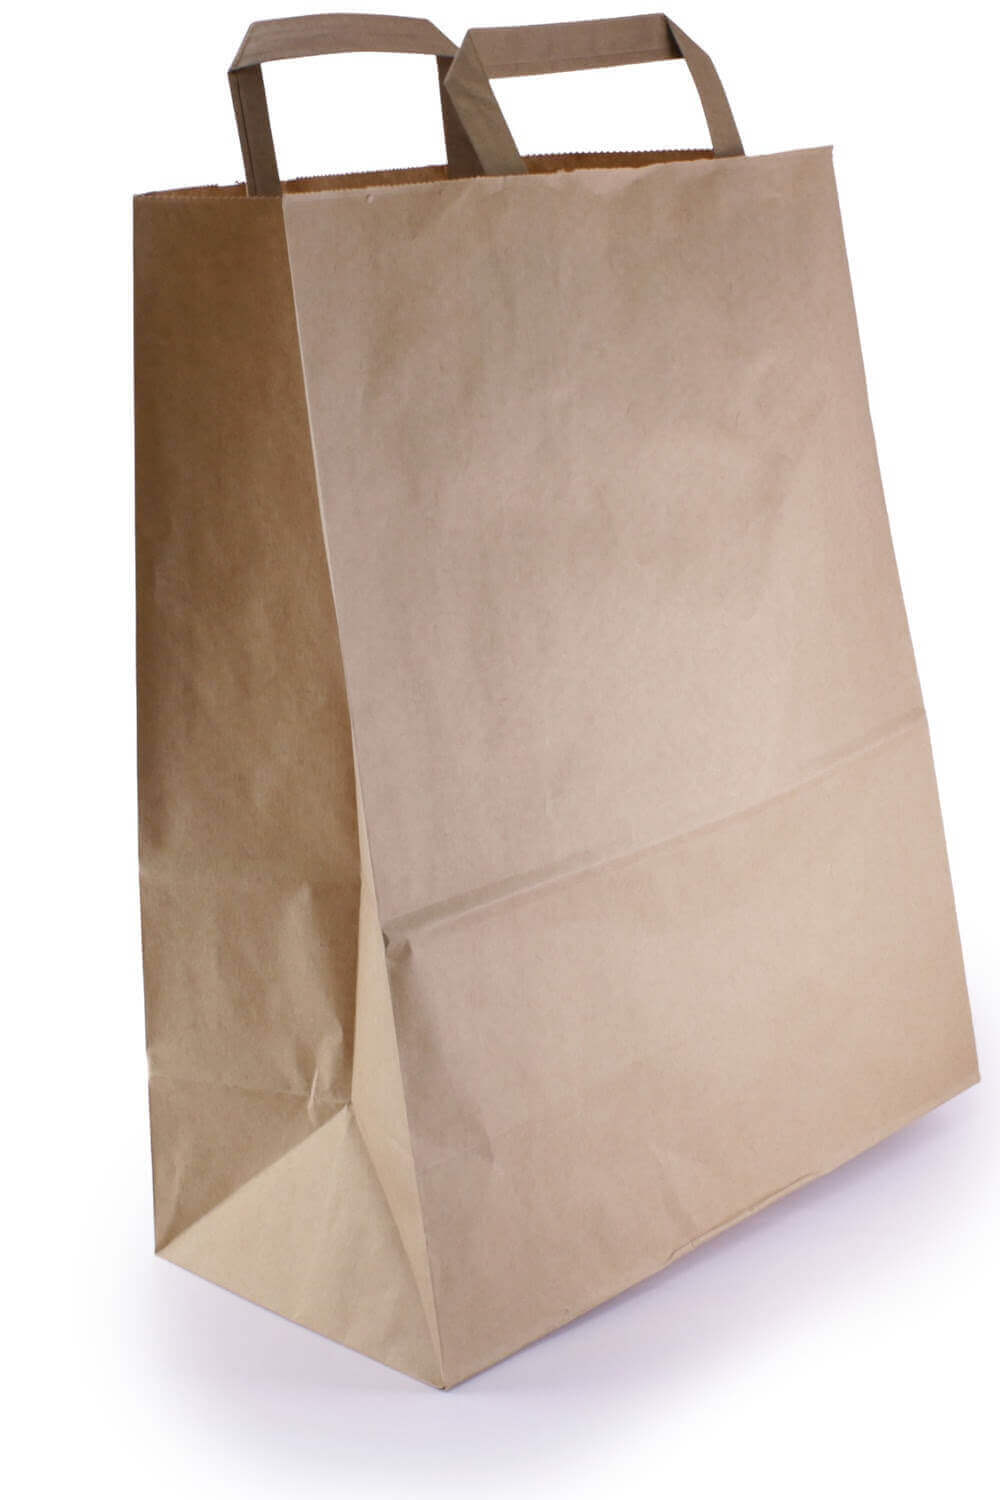 Kraft Brown Paper bags